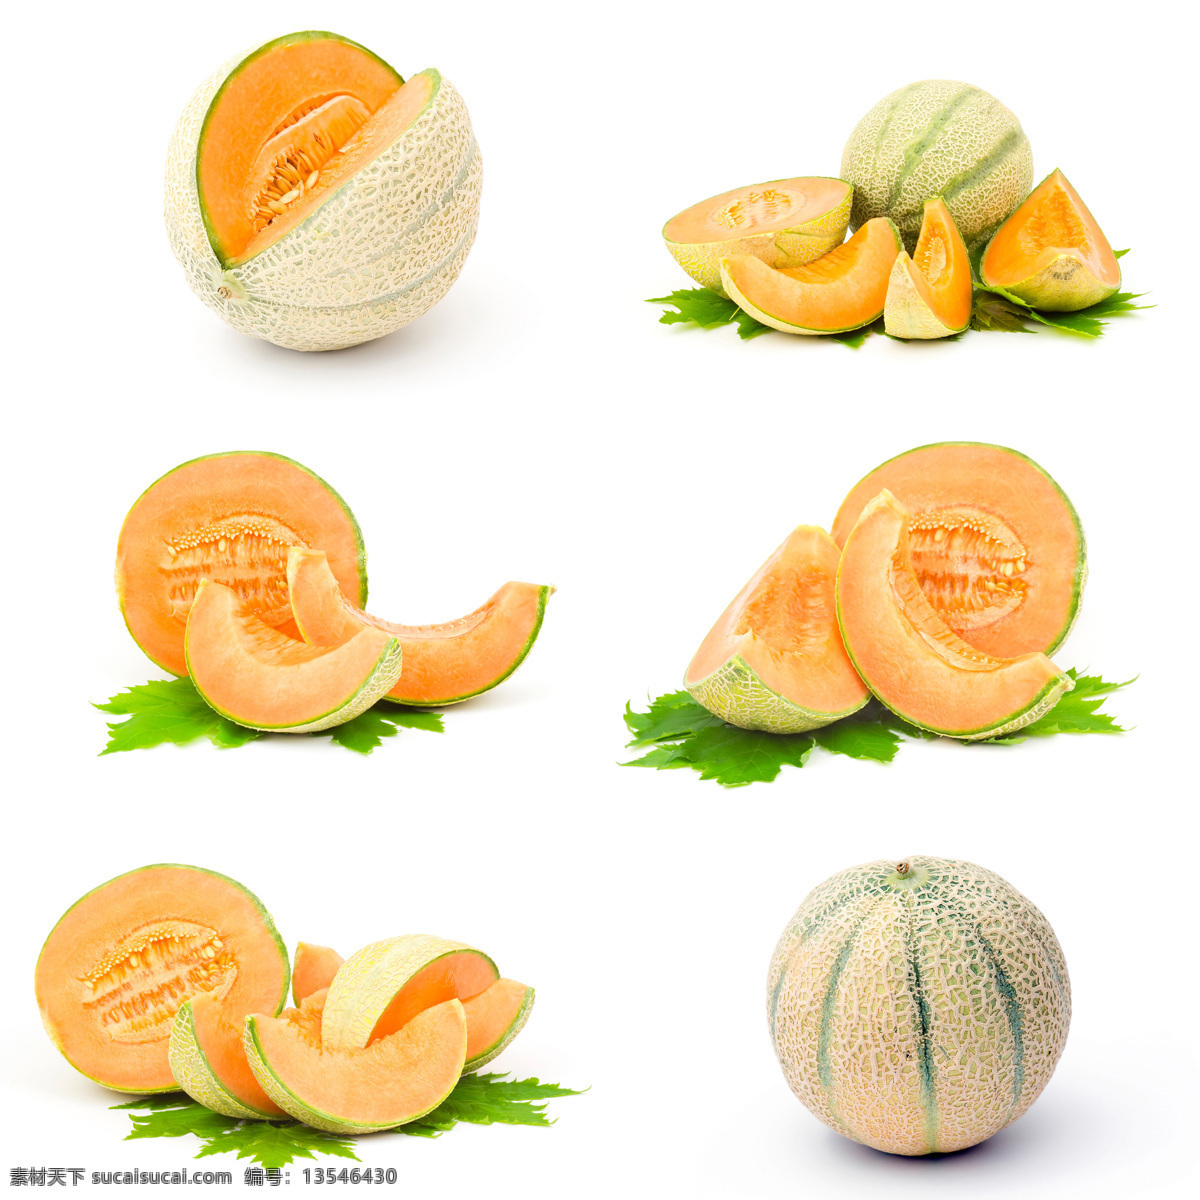 切开 美味 哈密瓜 瓜果 水果 新鲜水果 美味水果 水果摄影 蔬菜图片 餐饮美食